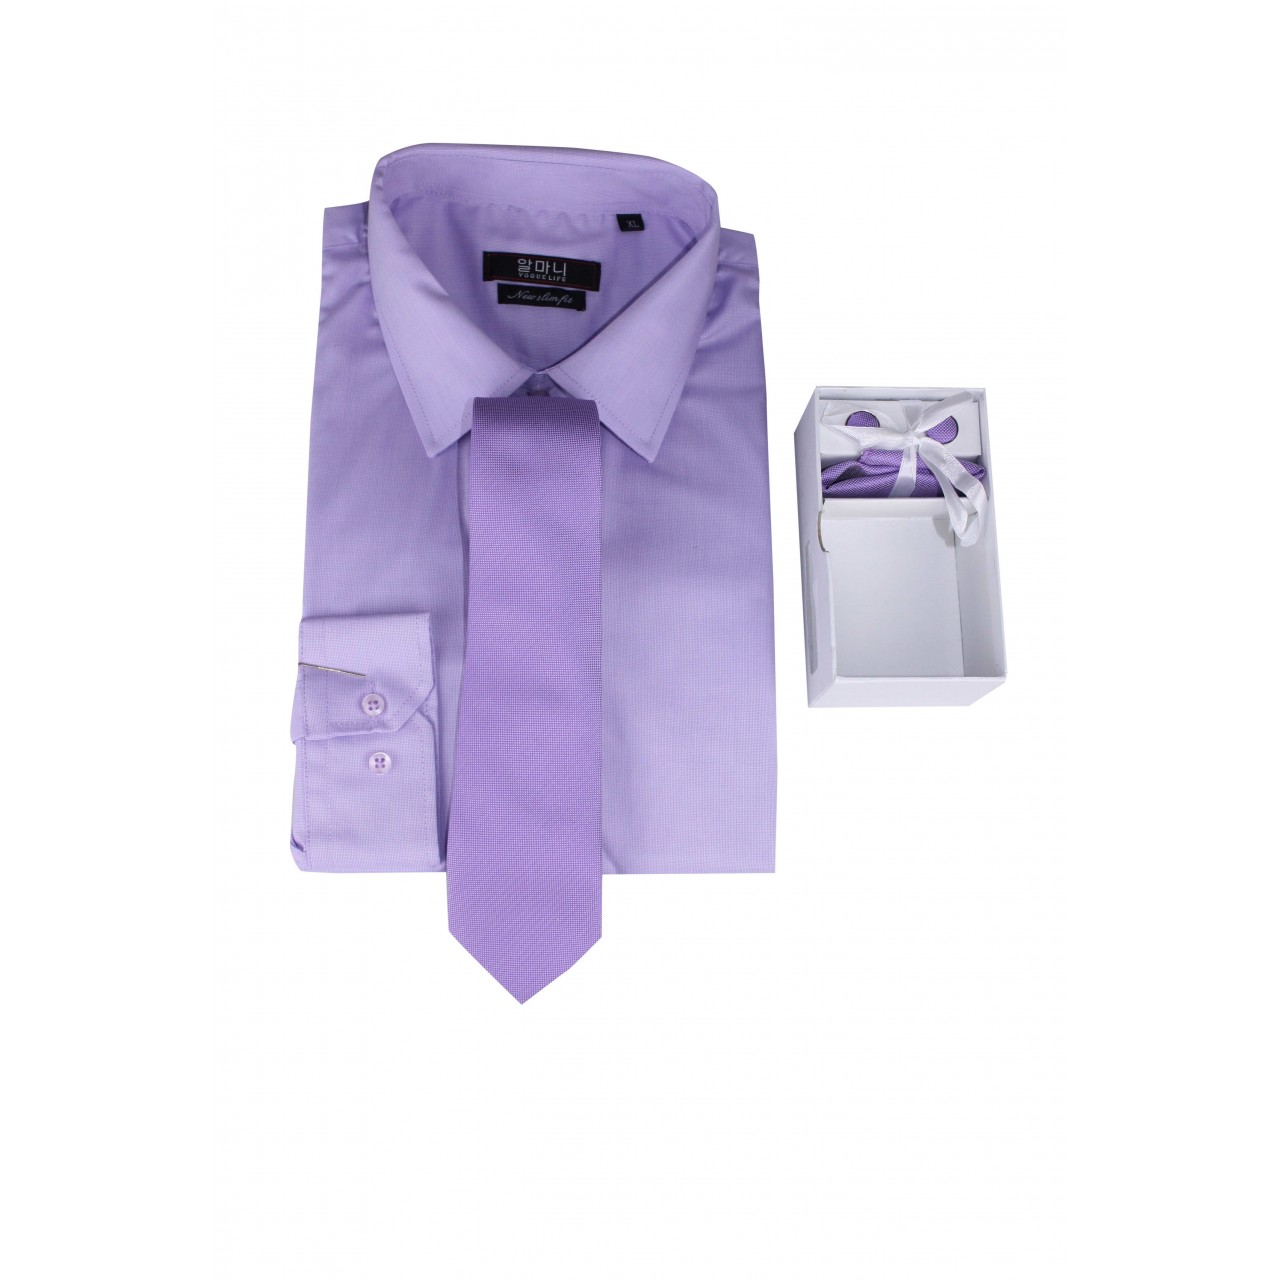 Men's Formal Basic VOGUE LIFE  Violet Shirt - Set